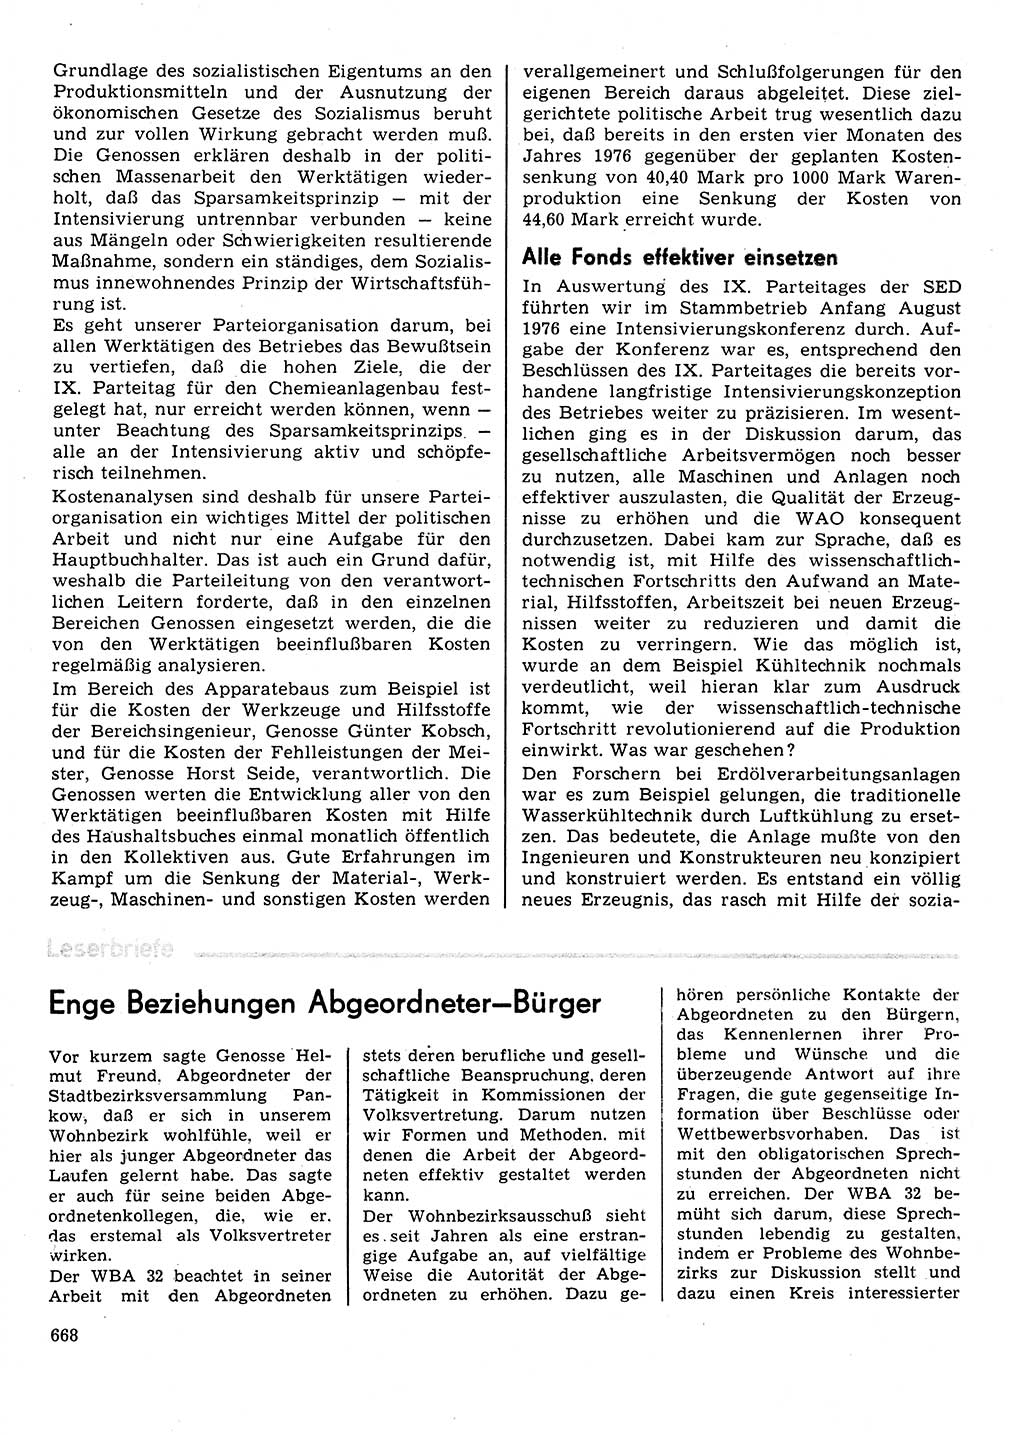 Neuer Weg (NW), Organ des Zentralkomitees (ZK) der SED (Sozialistische Einheitspartei Deutschlands) für Fragen des Parteilebens, 31. Jahrgang [Deutsche Demokratische Republik (DDR)] 1976, Seite 668 (NW ZK SED DDR 1976, S. 668)